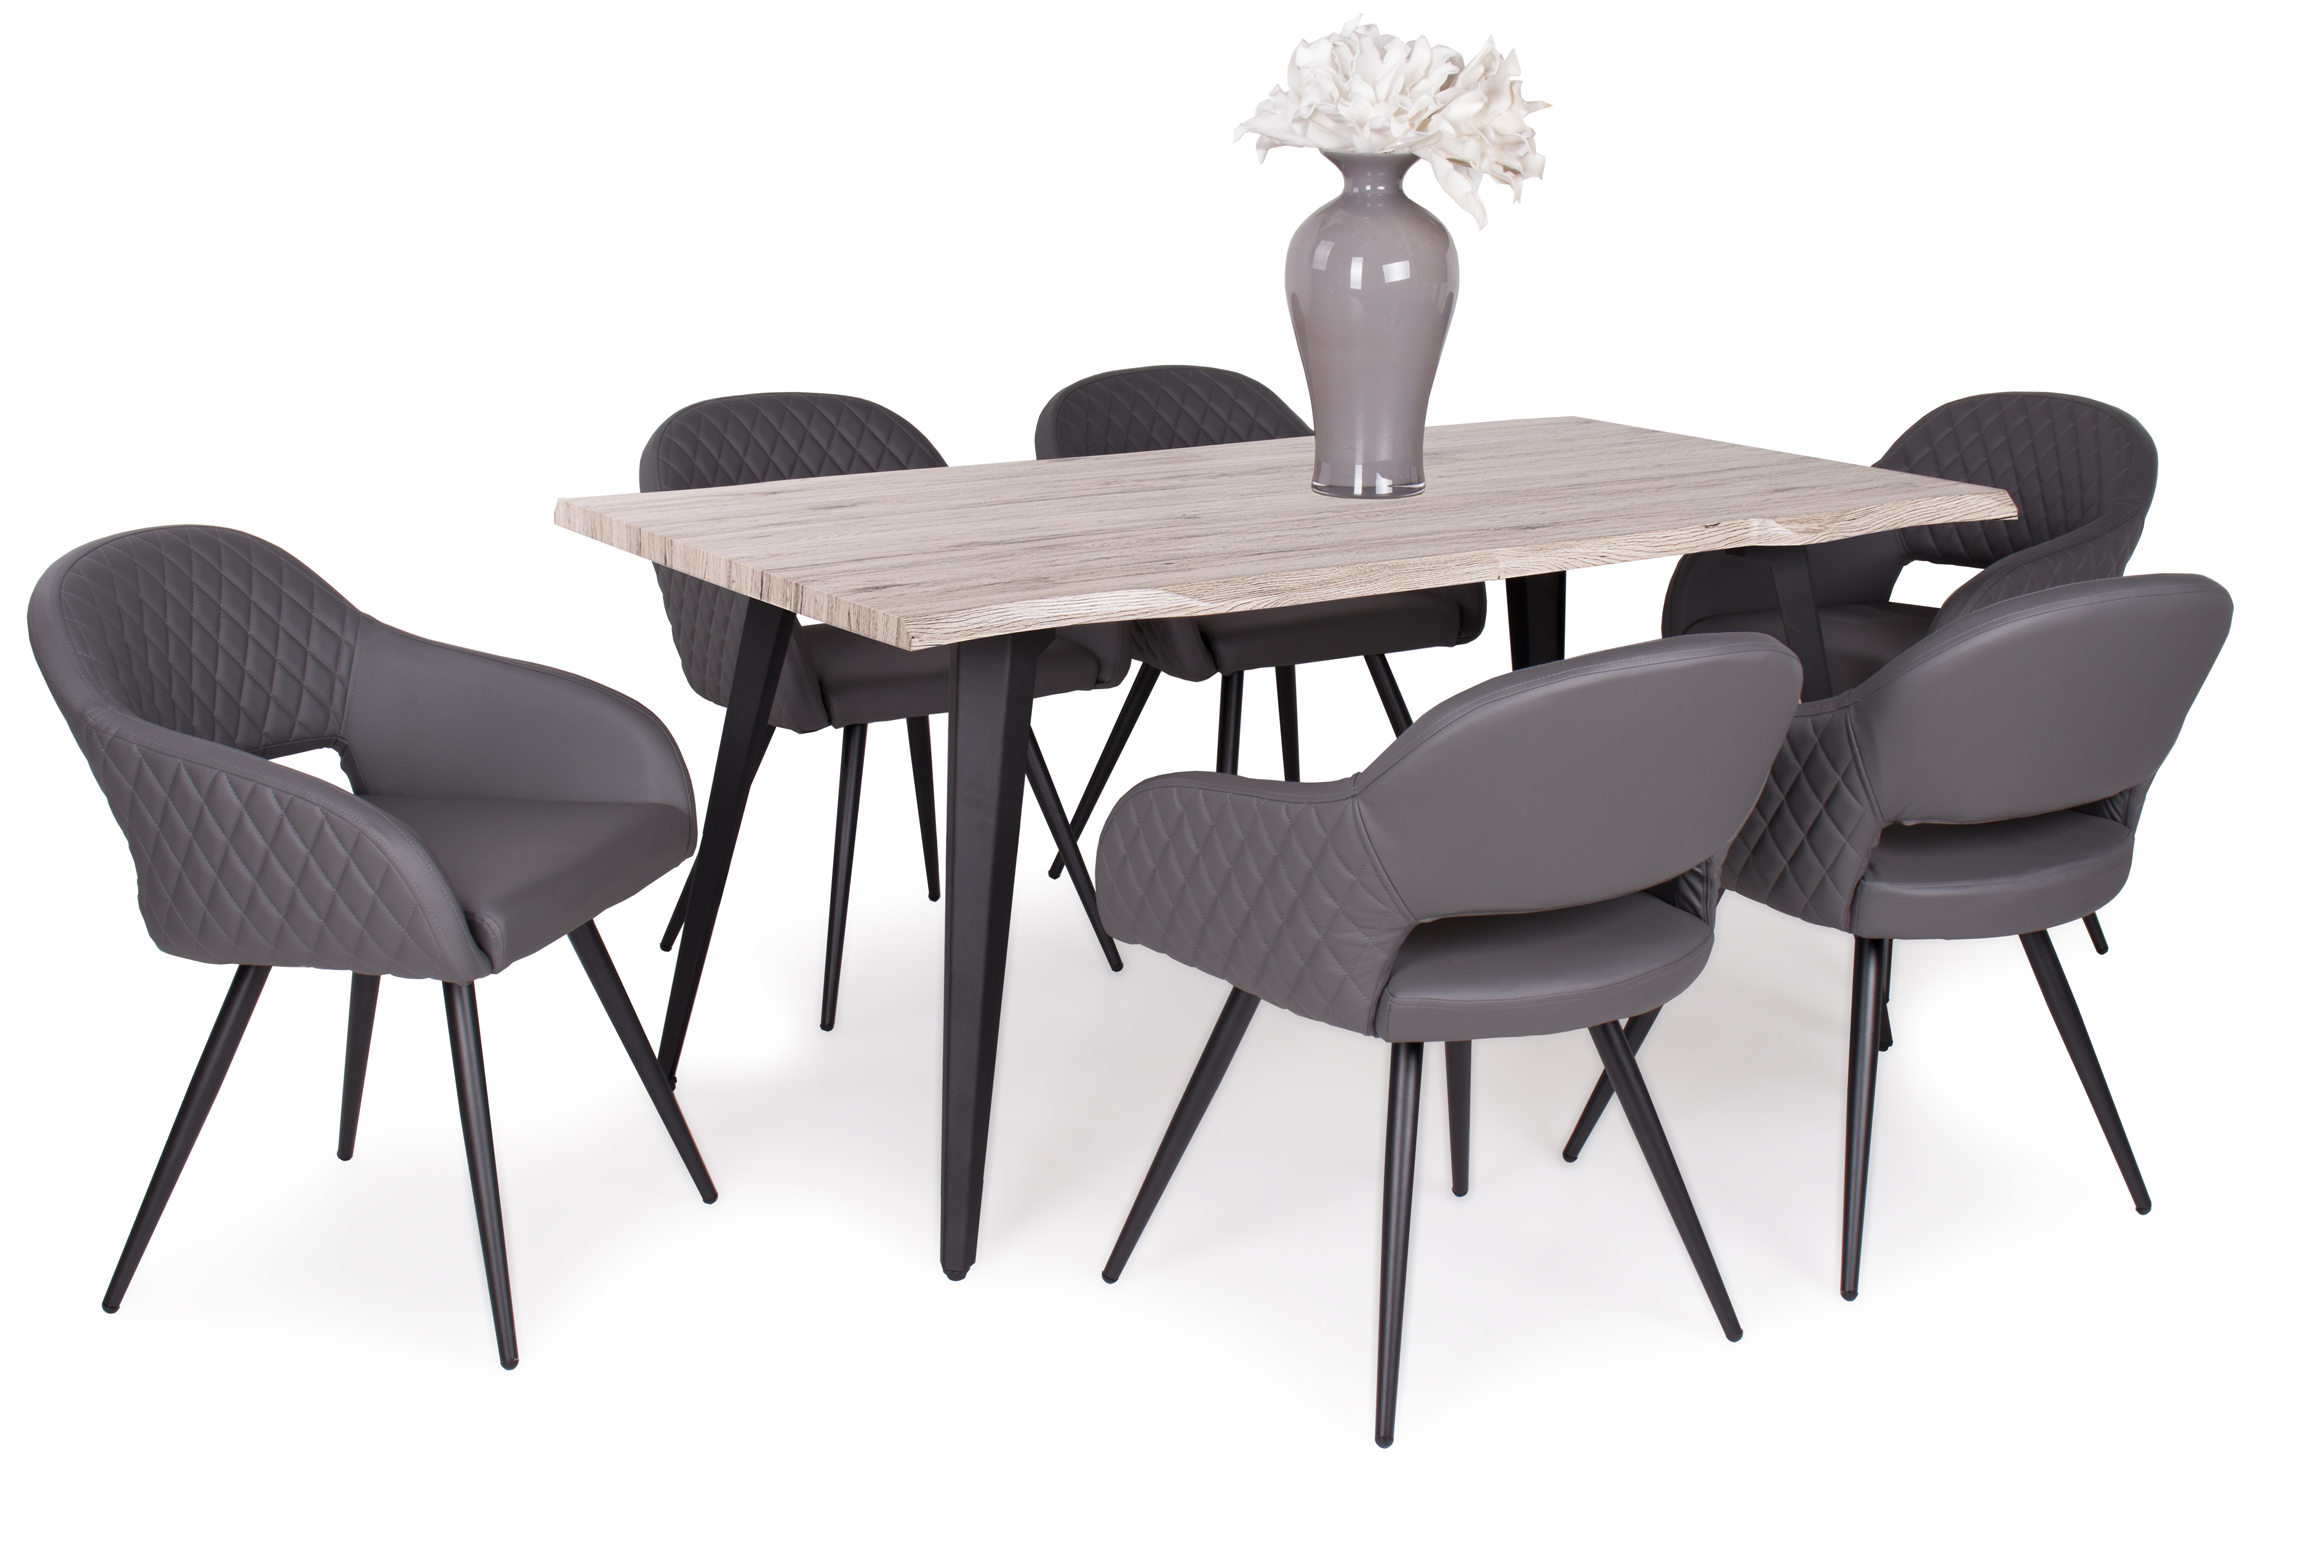 Tina asztal Cristal székekkel | 6 személyes étkezőgarnitúra